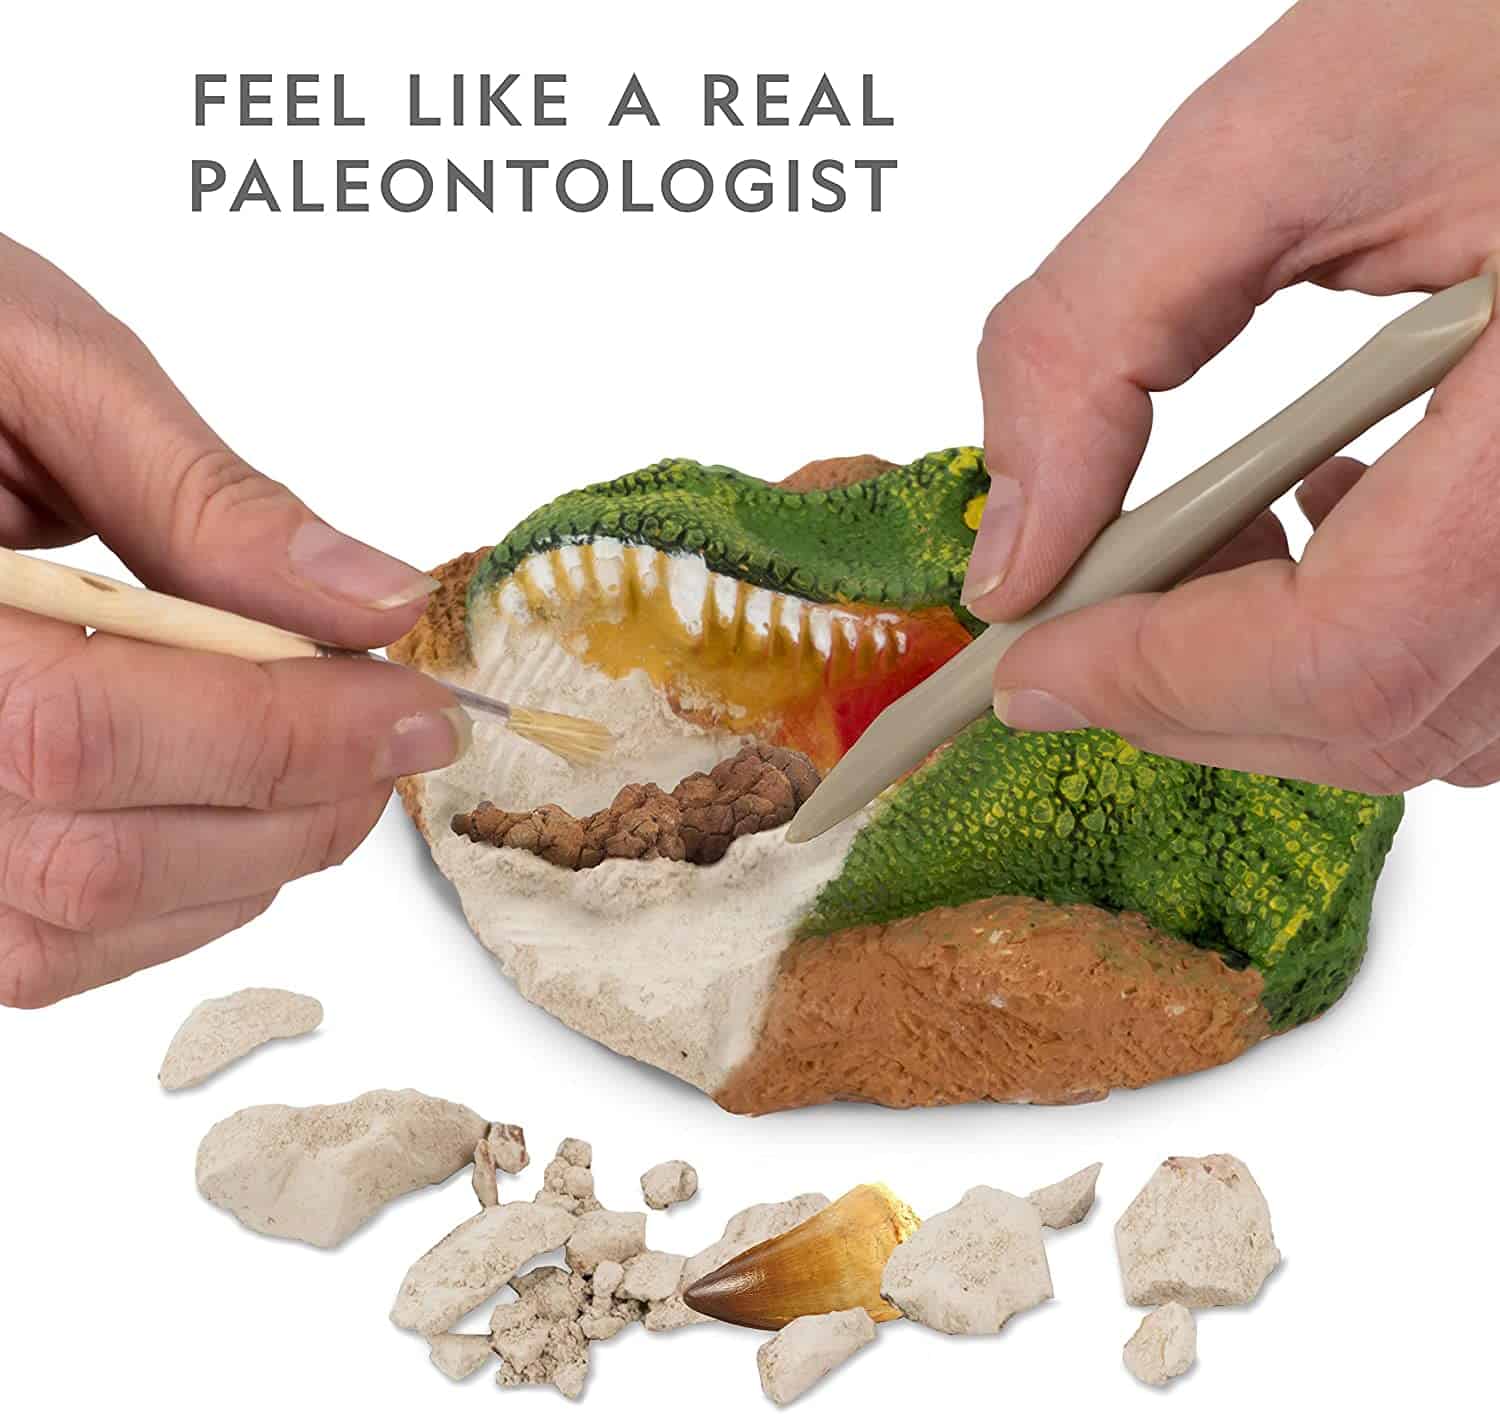 Los mejores juguetes de dinosaurios para niños de 7 años: kit de excavación de dinosaurios de National Geographic